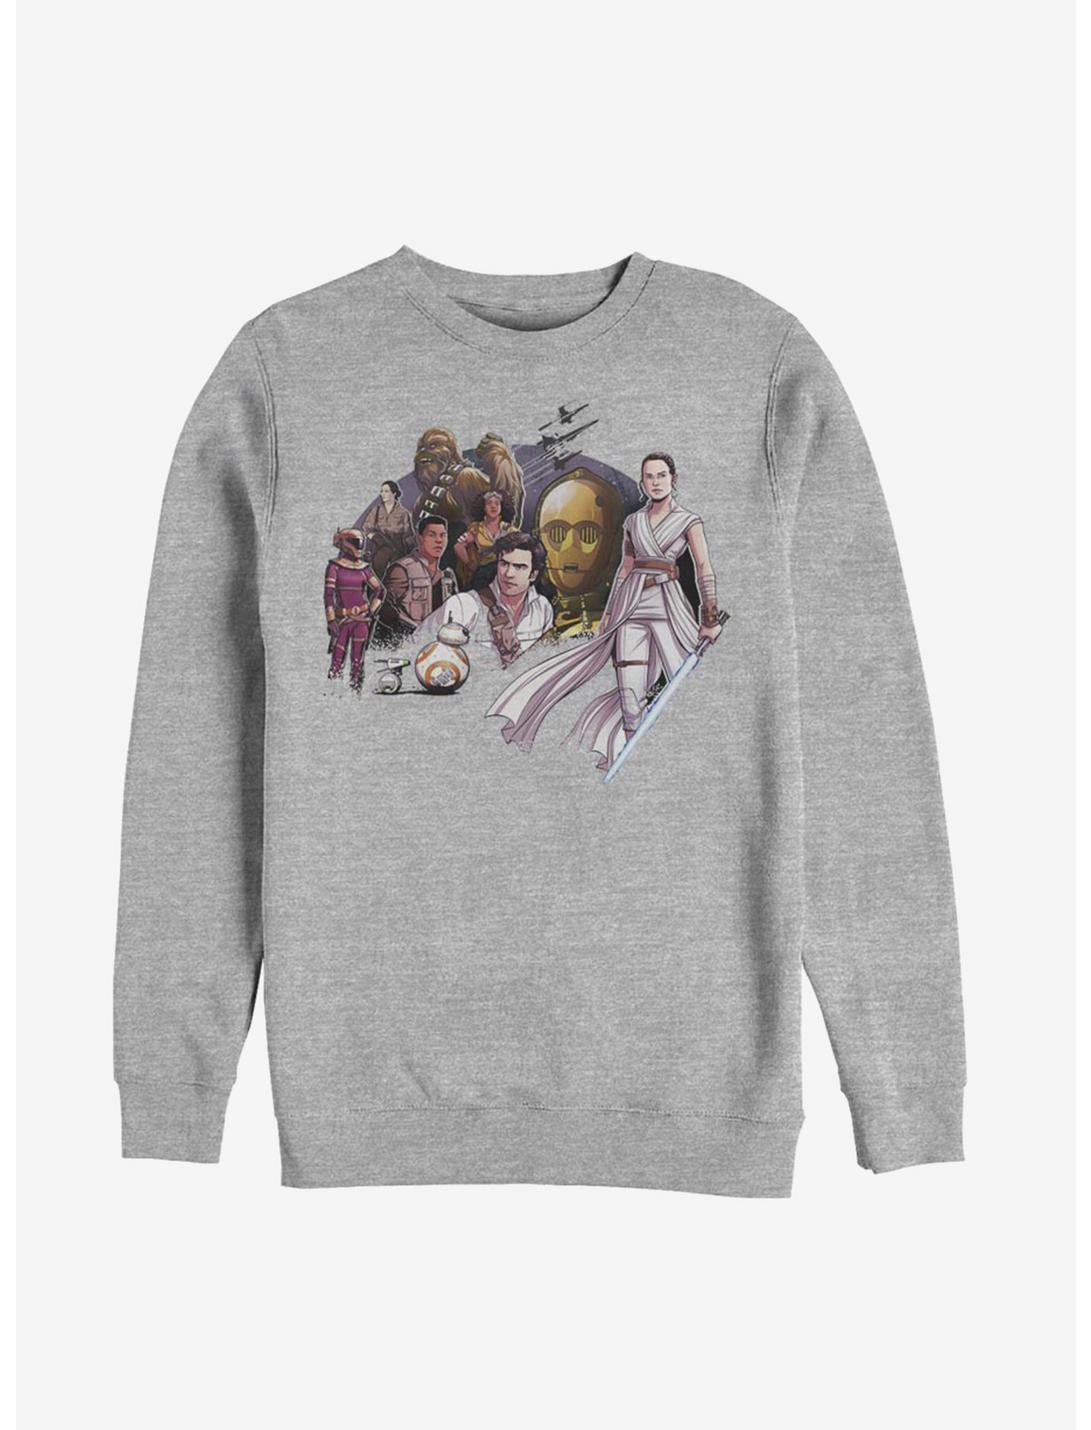 Star Wars Episode IX The Rise Of Skywalker Light Side Sweatshirt, ATH HTR, hi-res